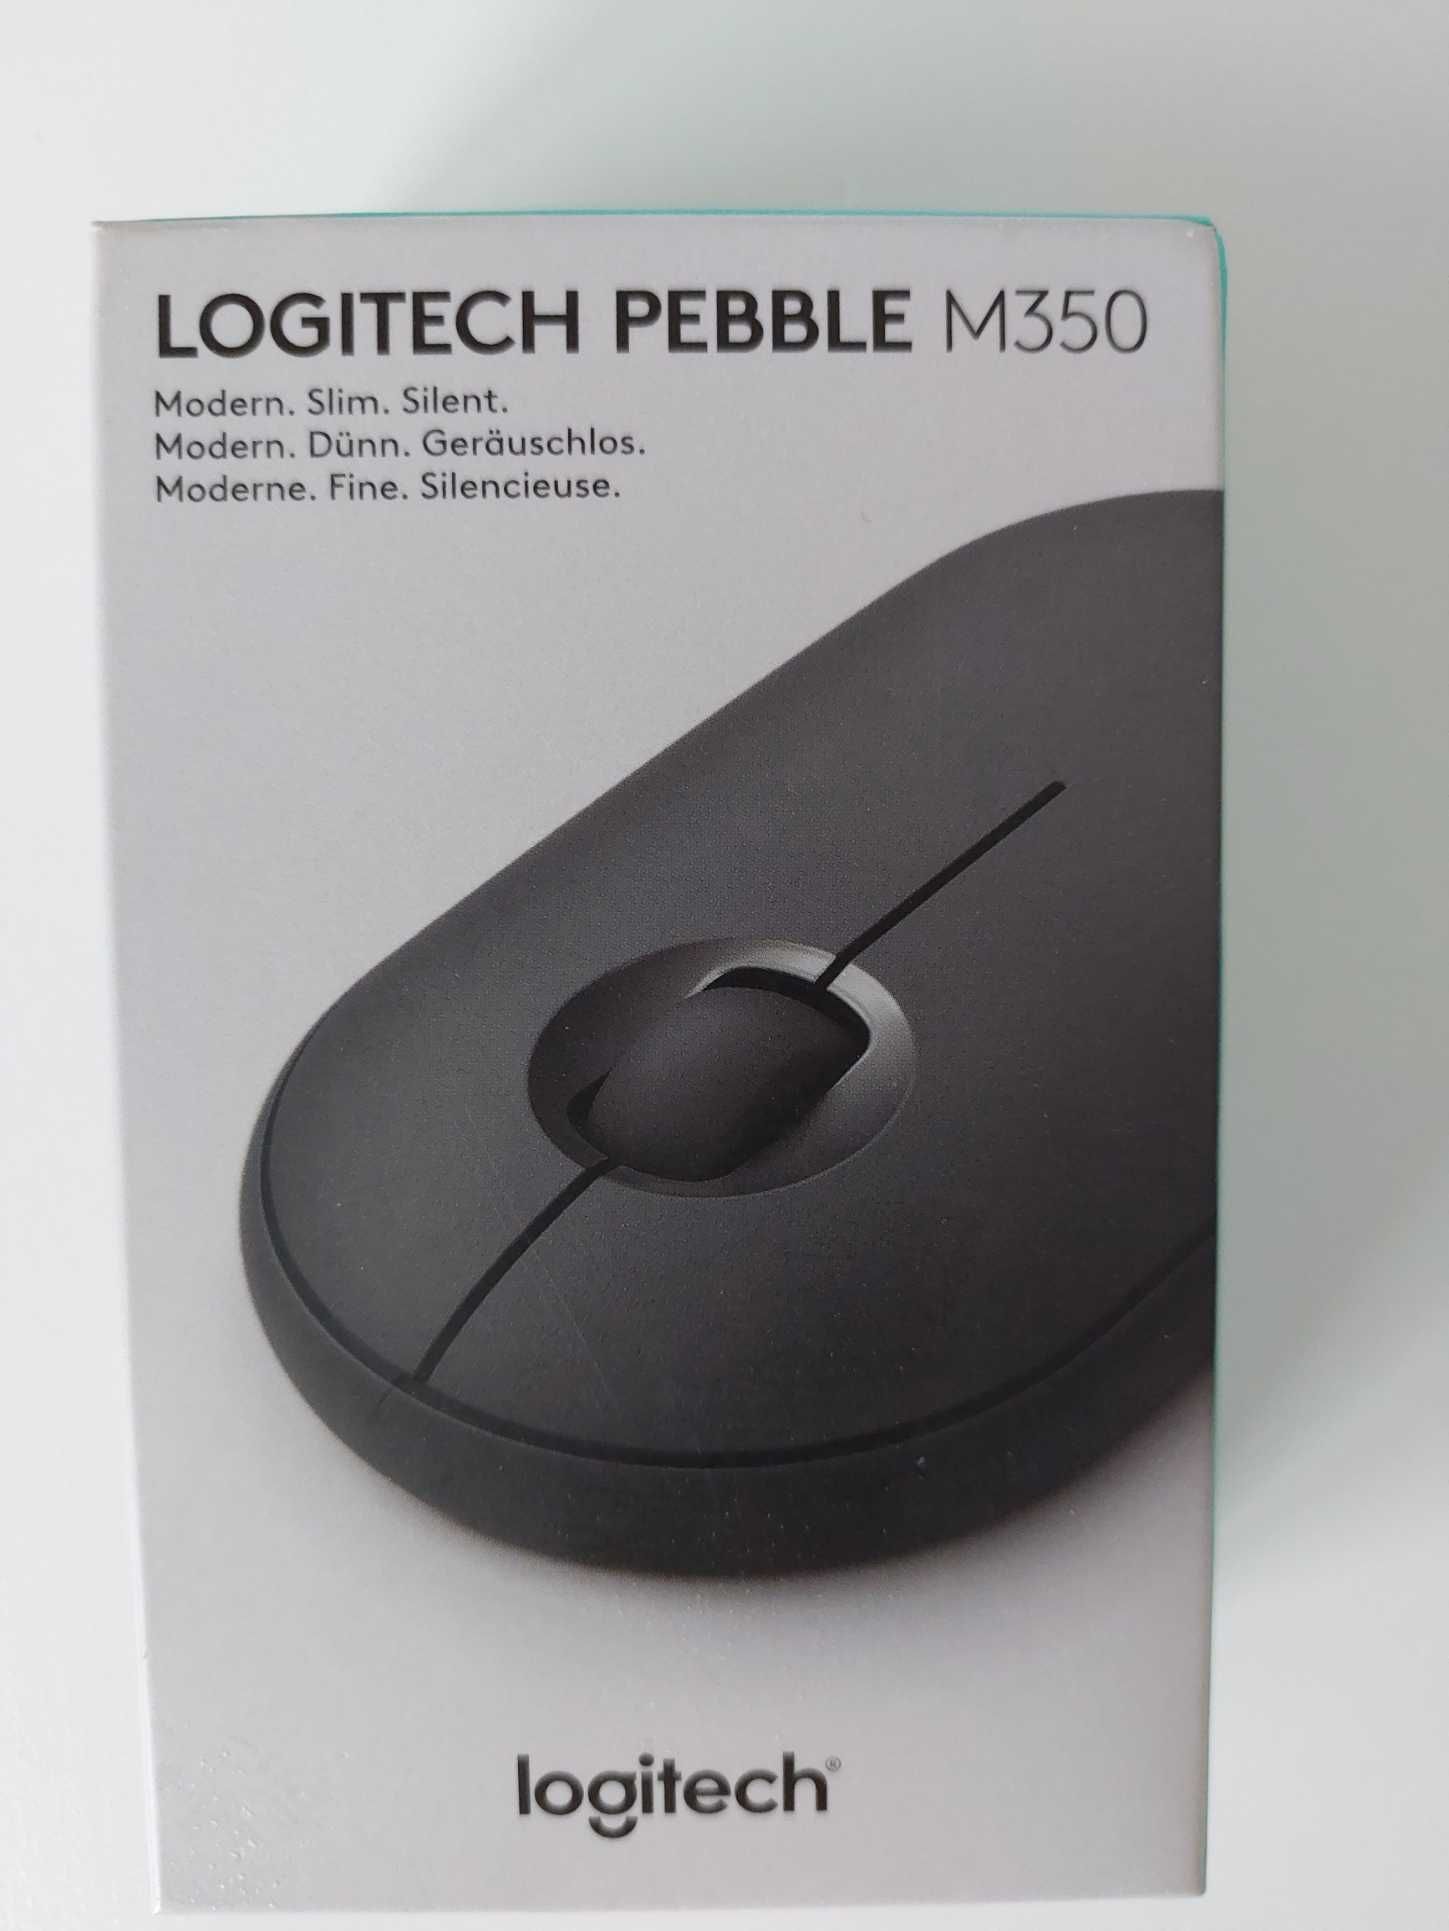 Mouse wireless Logitech Pebble M350, culoare gri (Grafit)